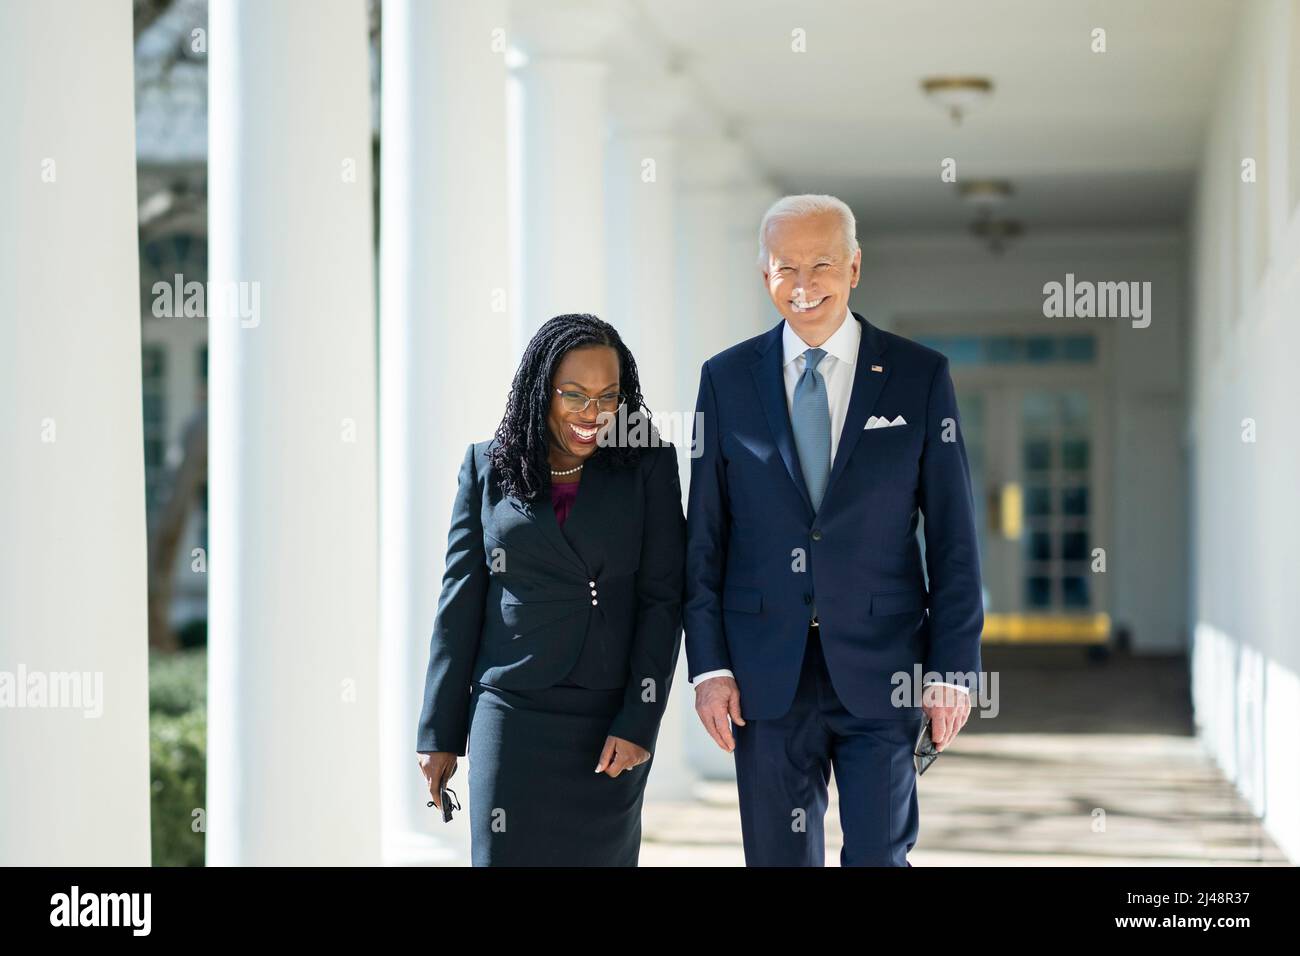 WASHINGTON DC, EE.UU. - 25 de febrero de 2022 - El Presidente de EE.UU. Joe Biden camina con el Juez Ketanji Brown Jackson a lo largo de la Colonnade Oeste de la Casa Blanca, Vie Foto de stock